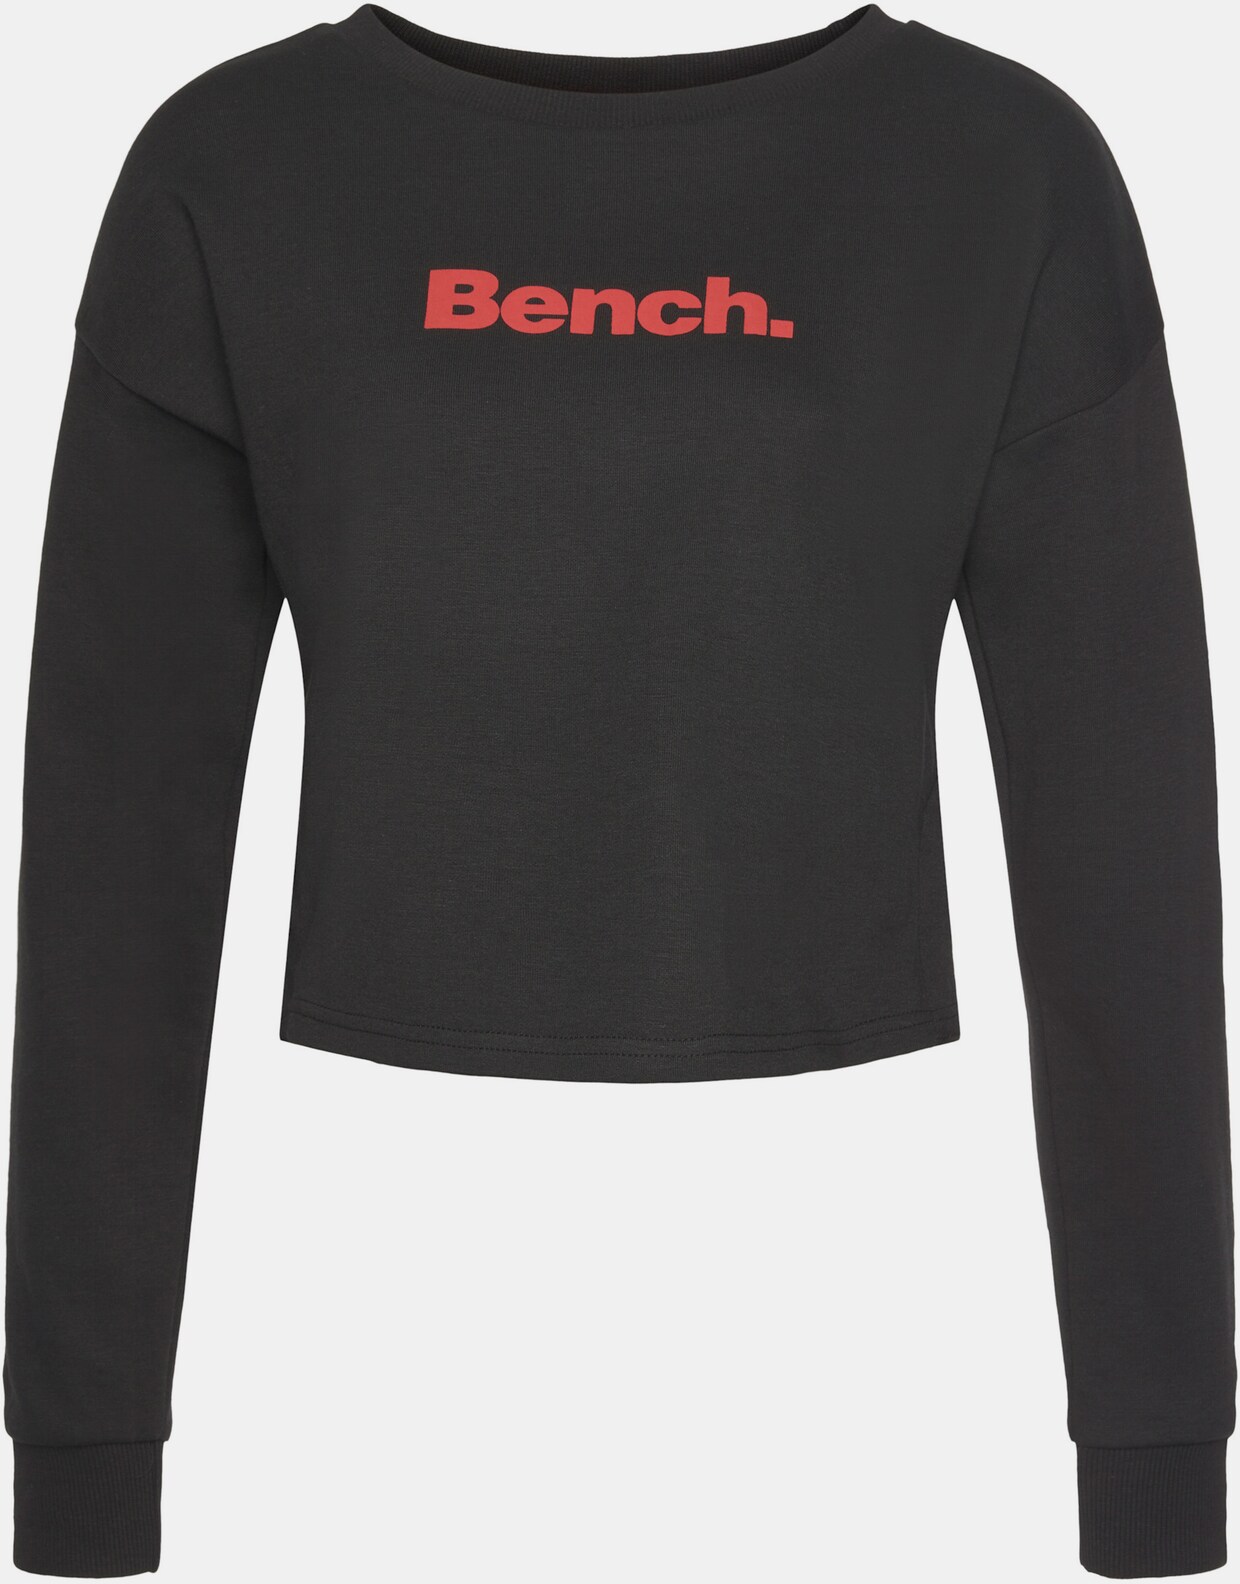 Bench. Sweater - schwarz